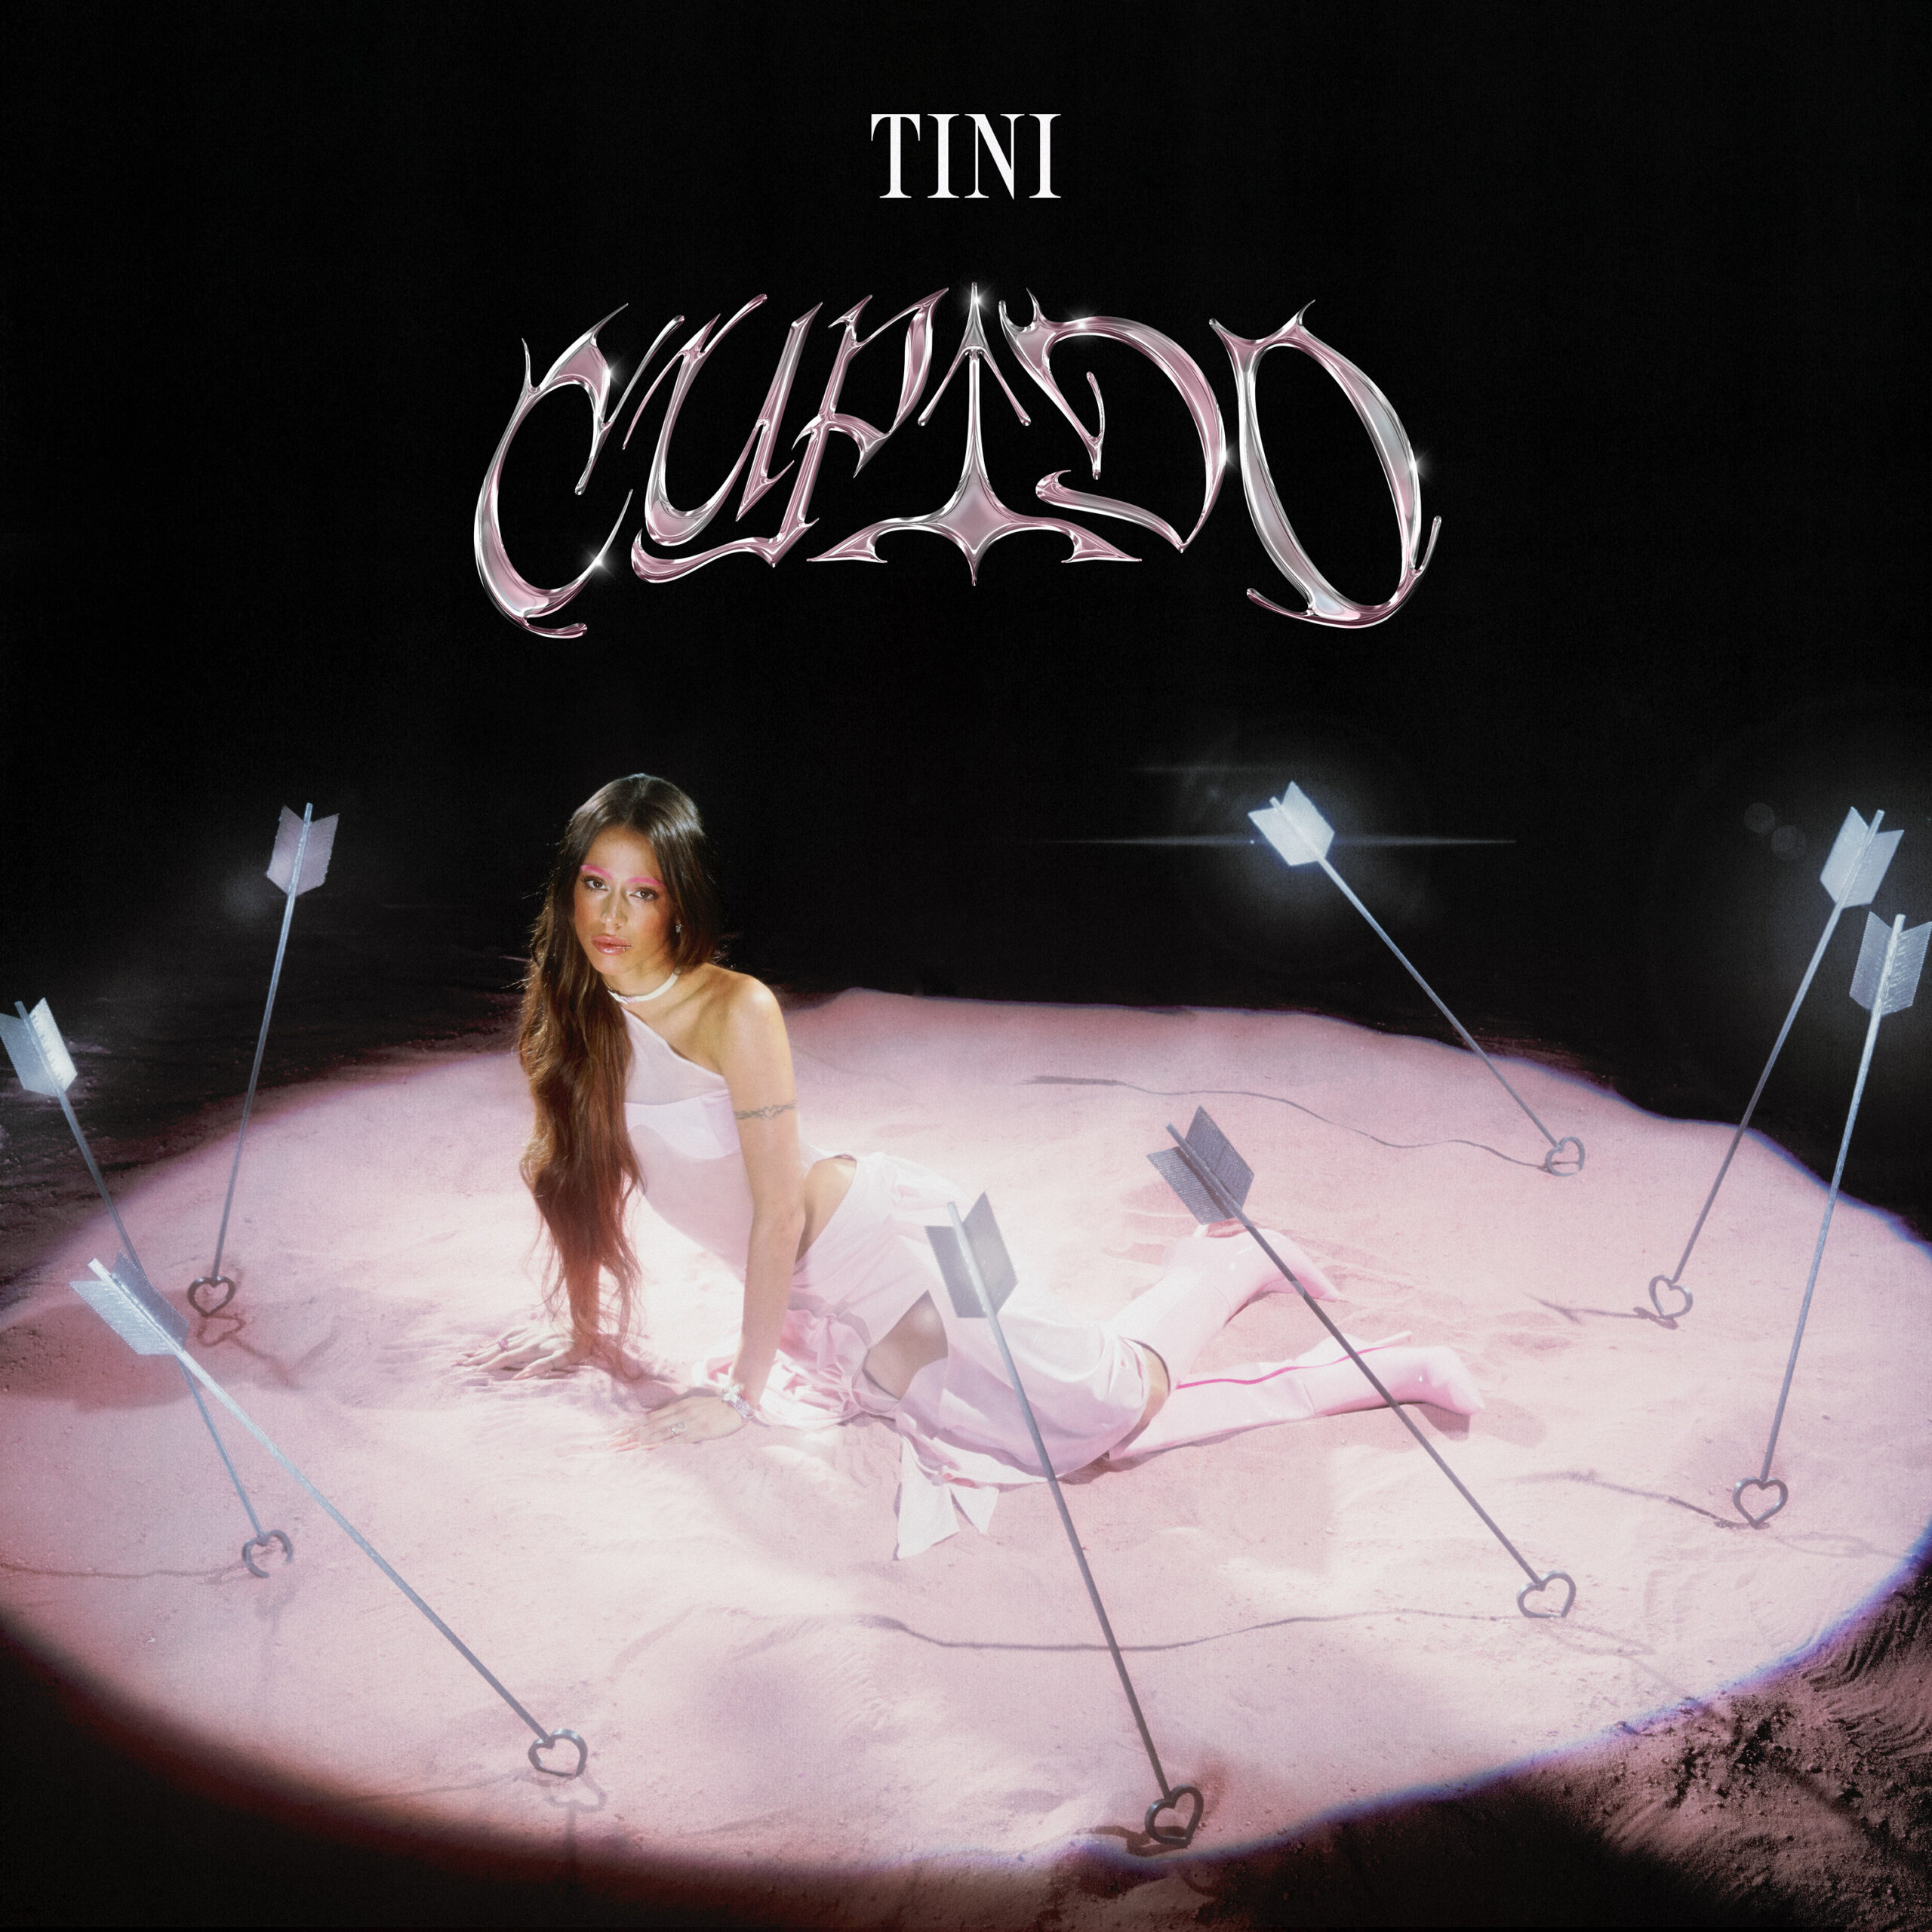 TINI estrena su nuevo álbum «Cupido»